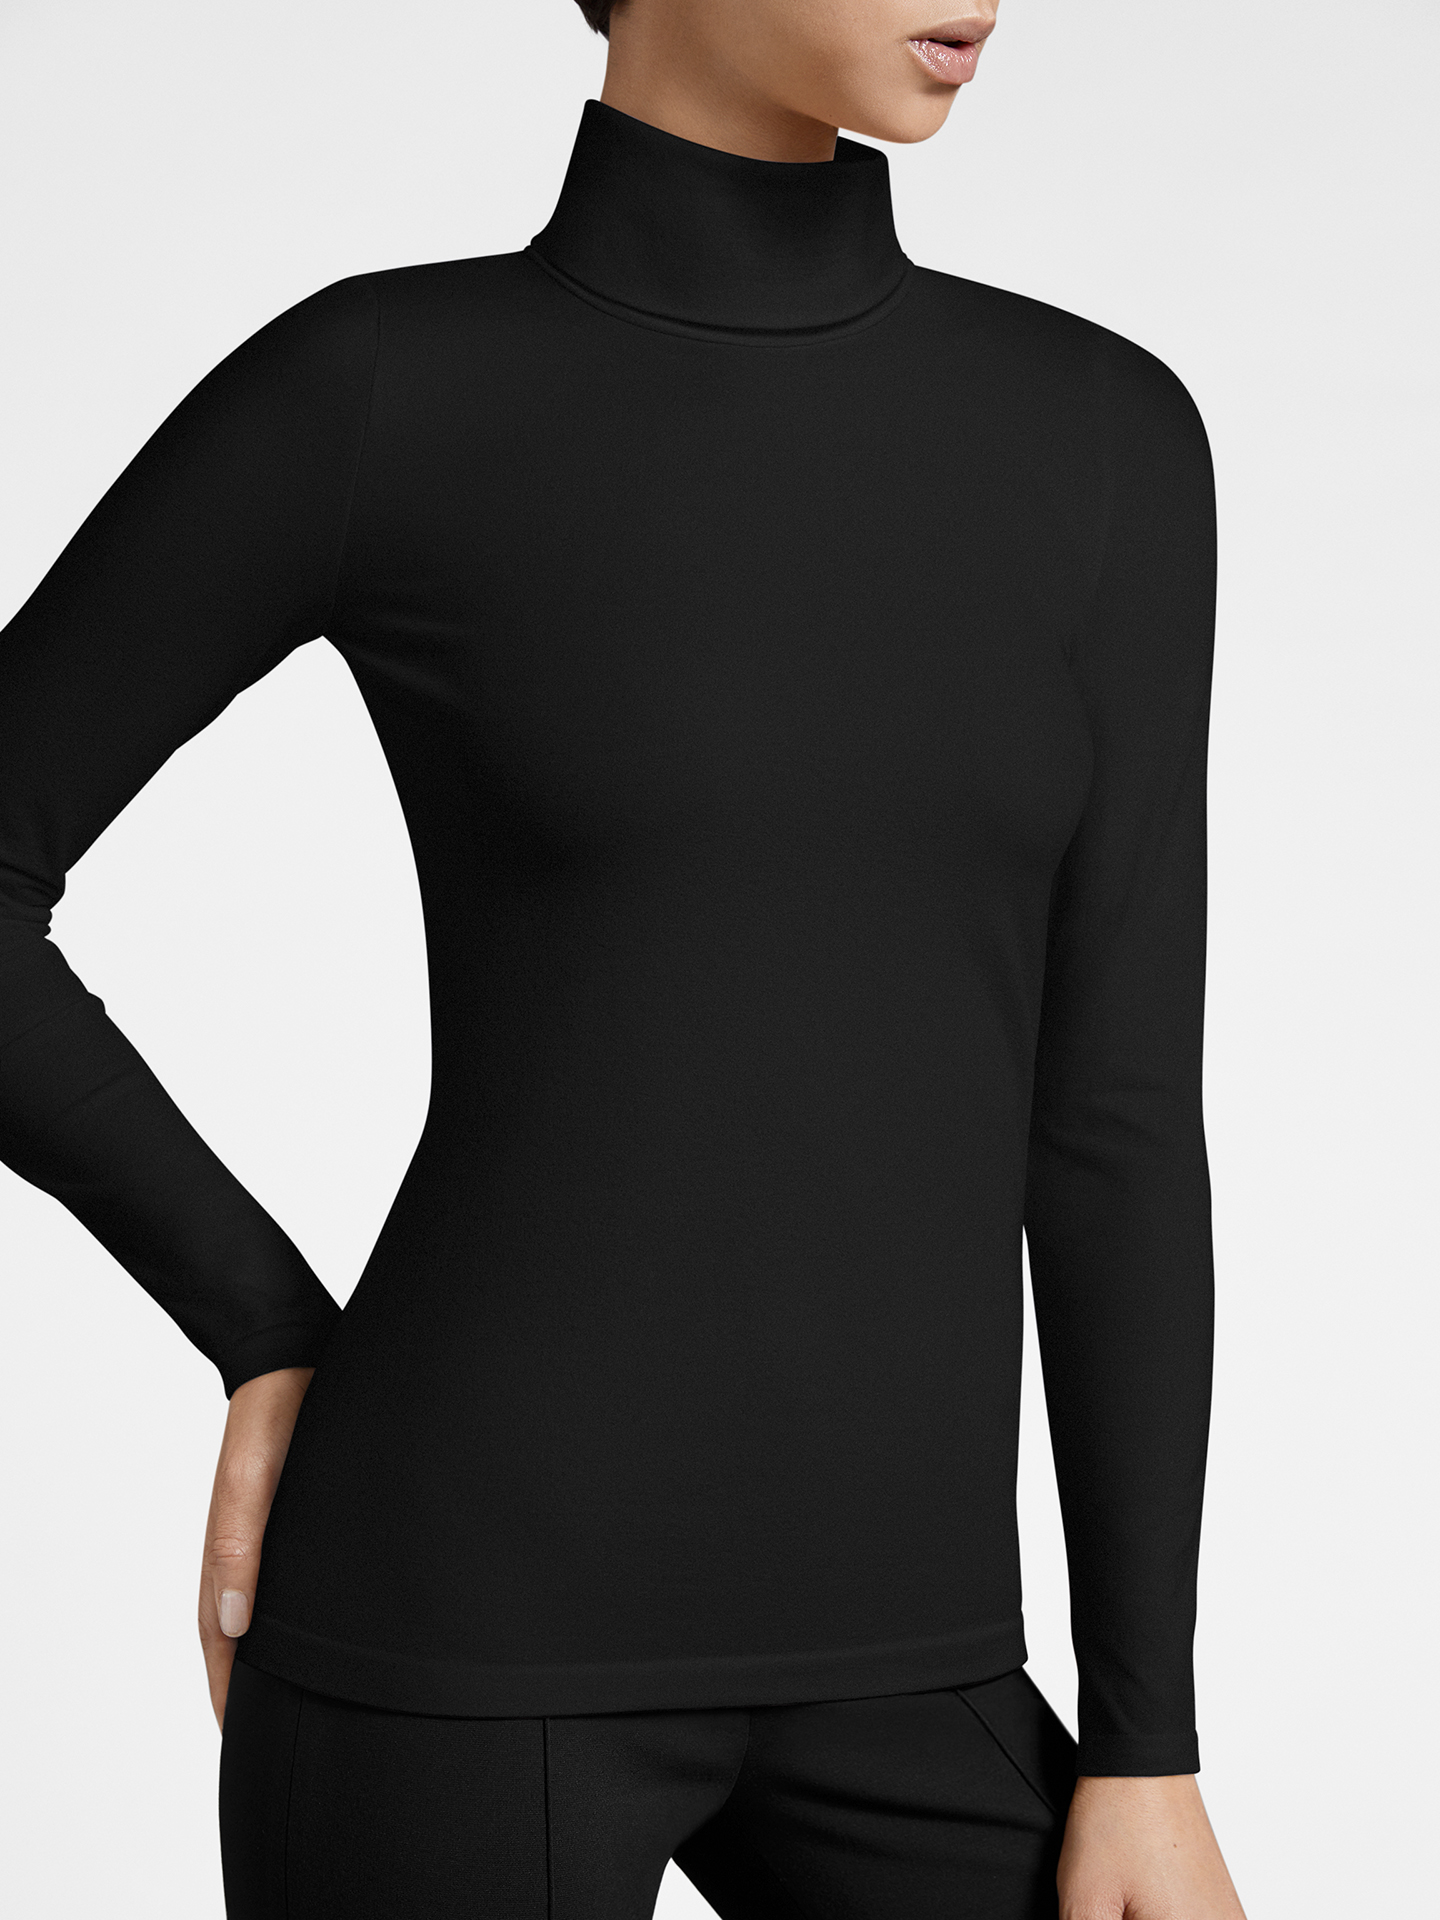 Wolford - Turtleneck Top Long Sleeves, Frau, black, Größe: XS günstig online kaufen